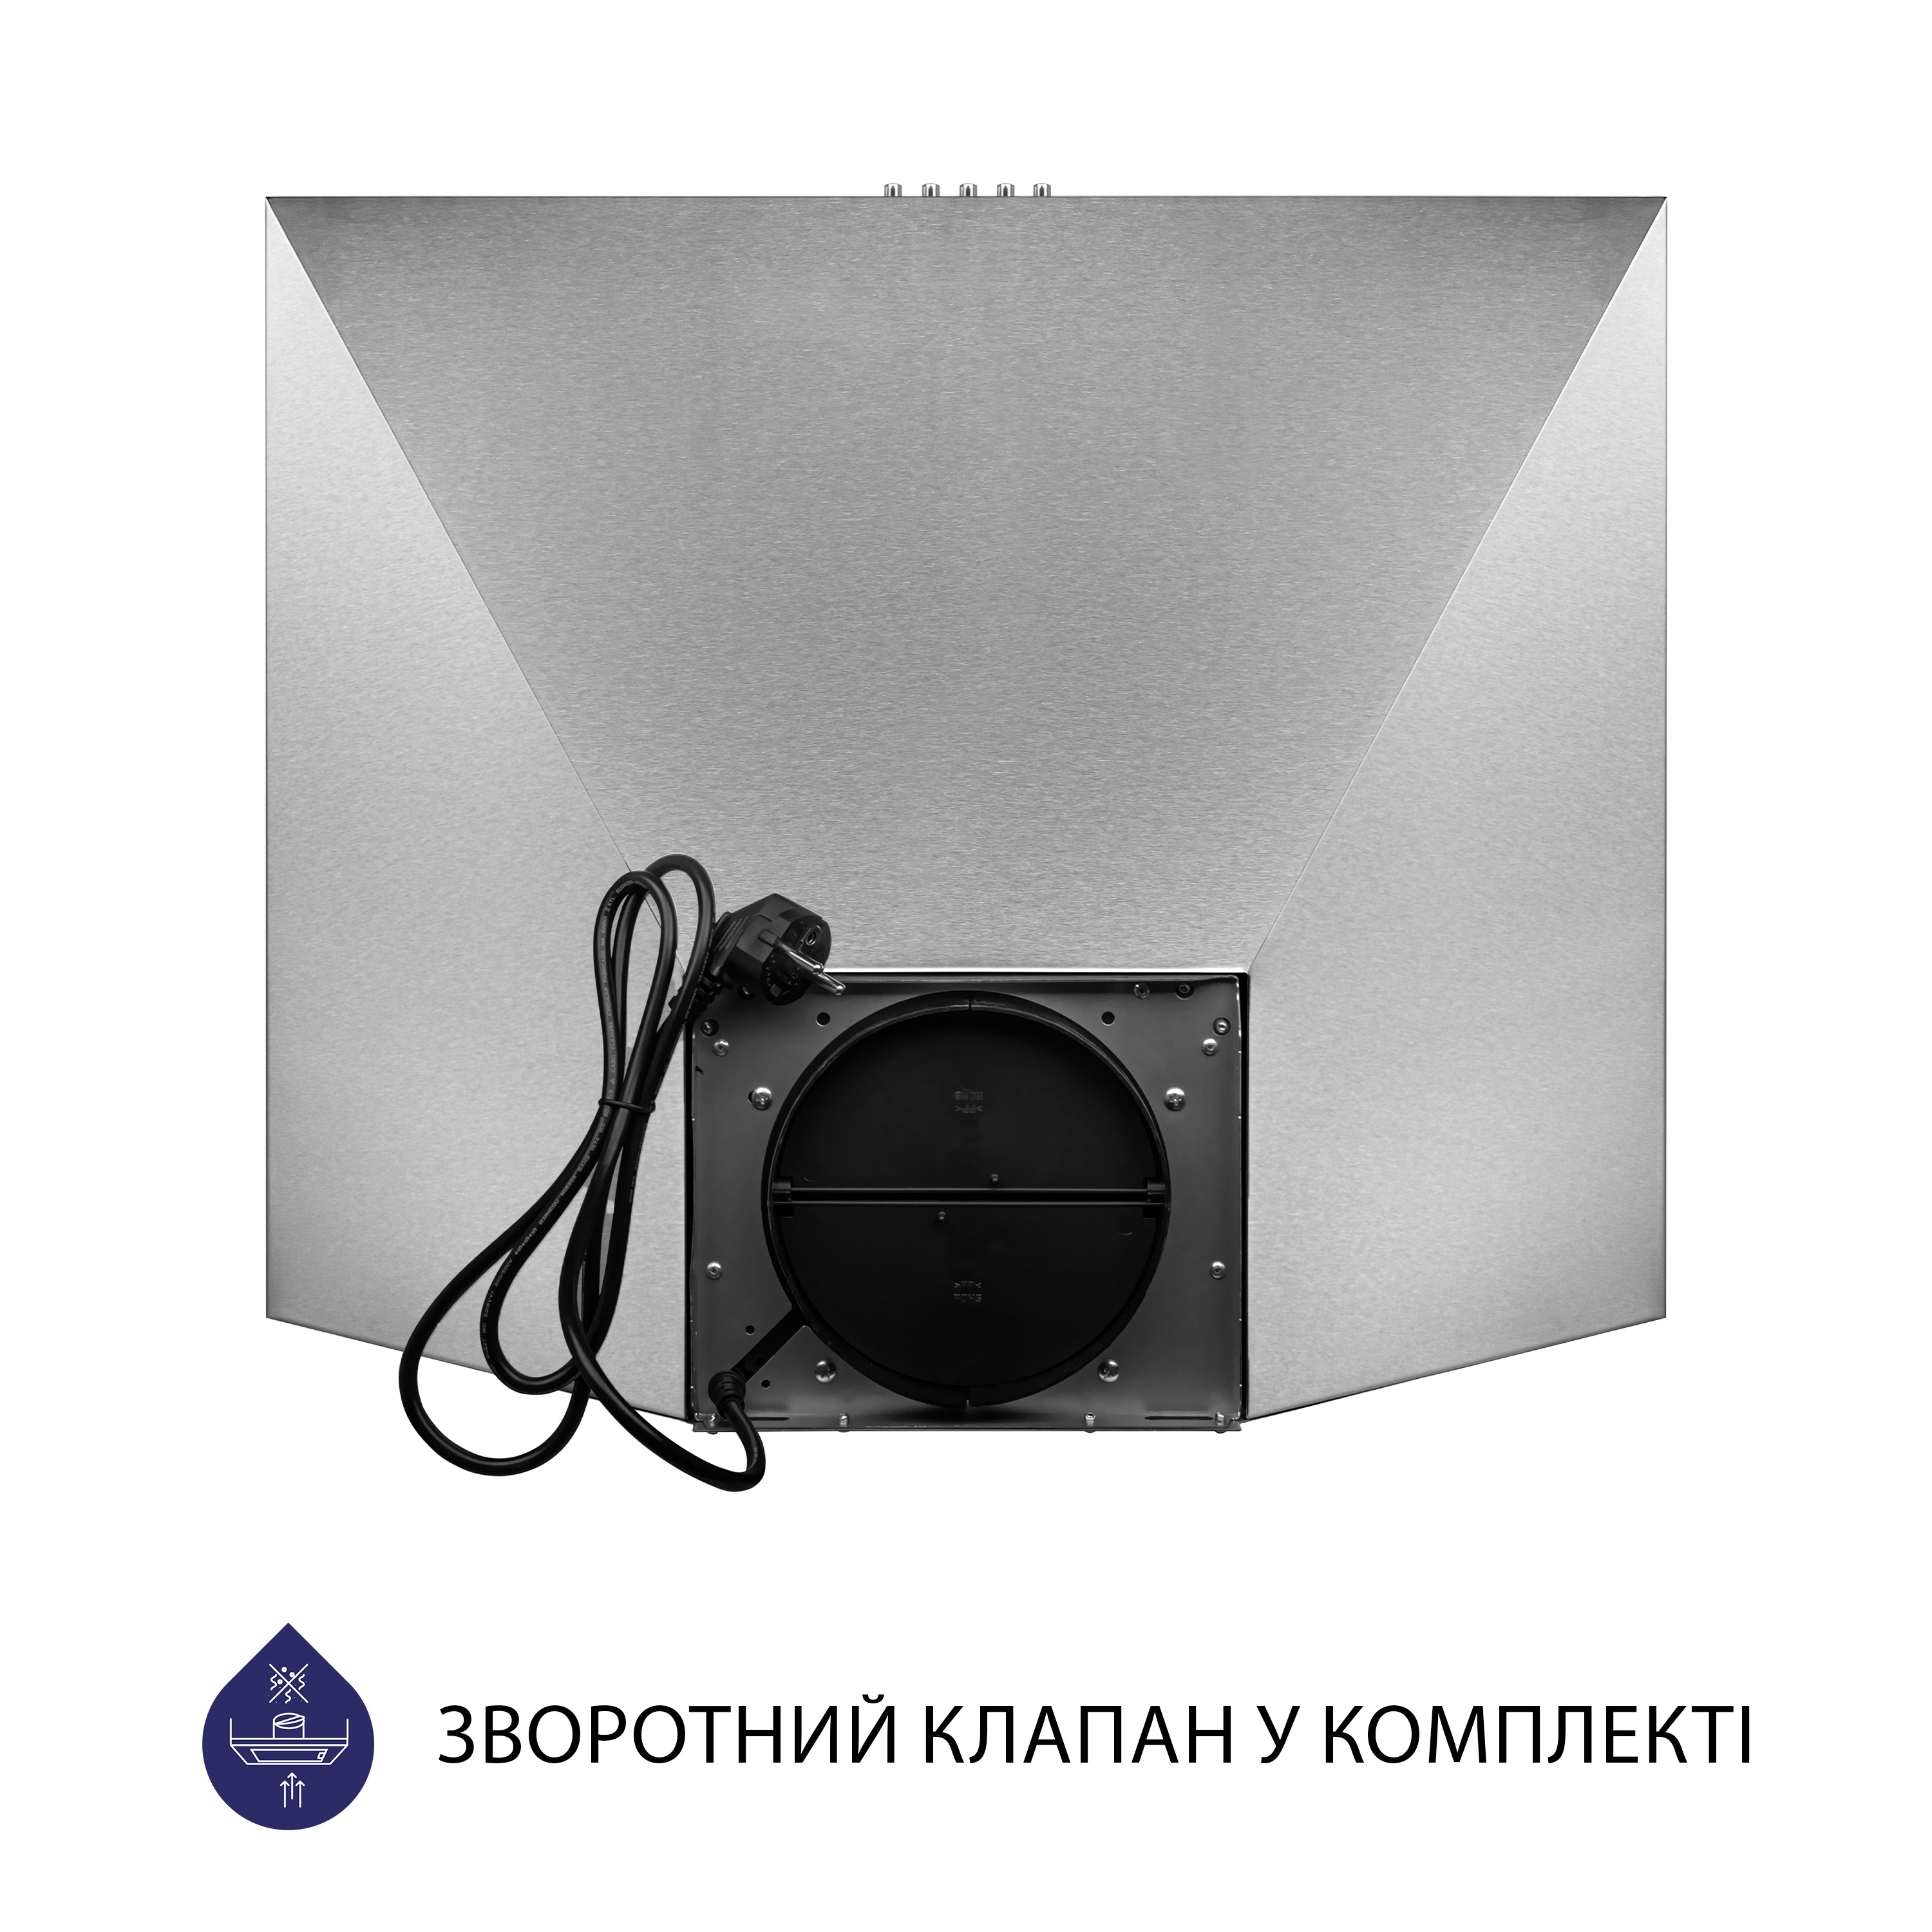 Витяжка кухонная купольная Minola HK 6614 I 1000 LED характеристики - фотография 7